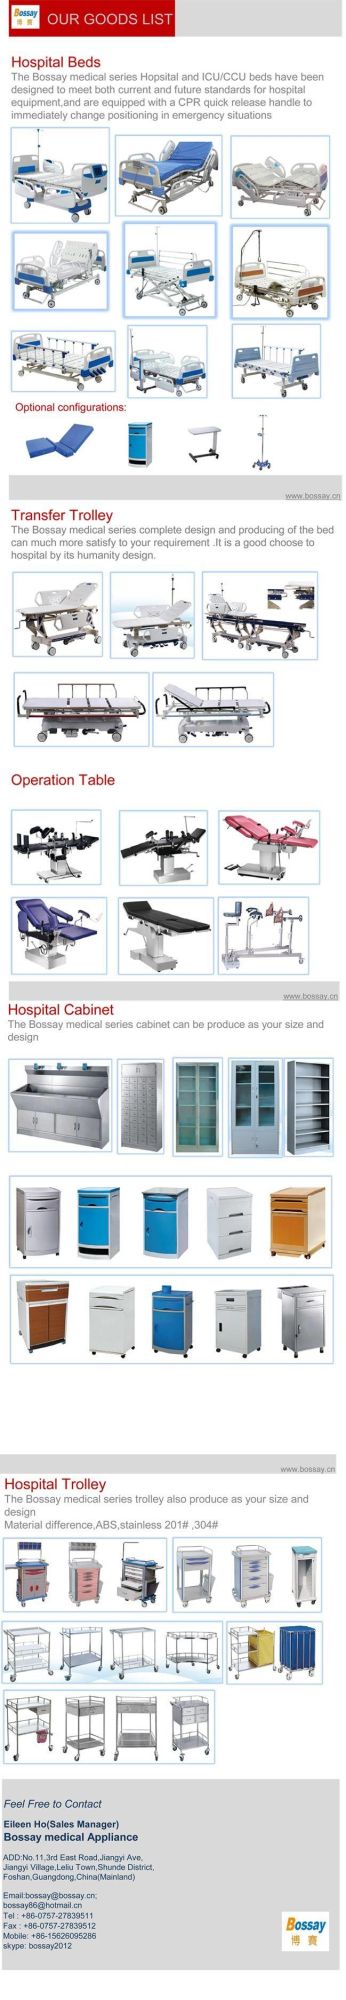 Hospital Manual Crank ICU Ward Patient Bed Furniture Equipment